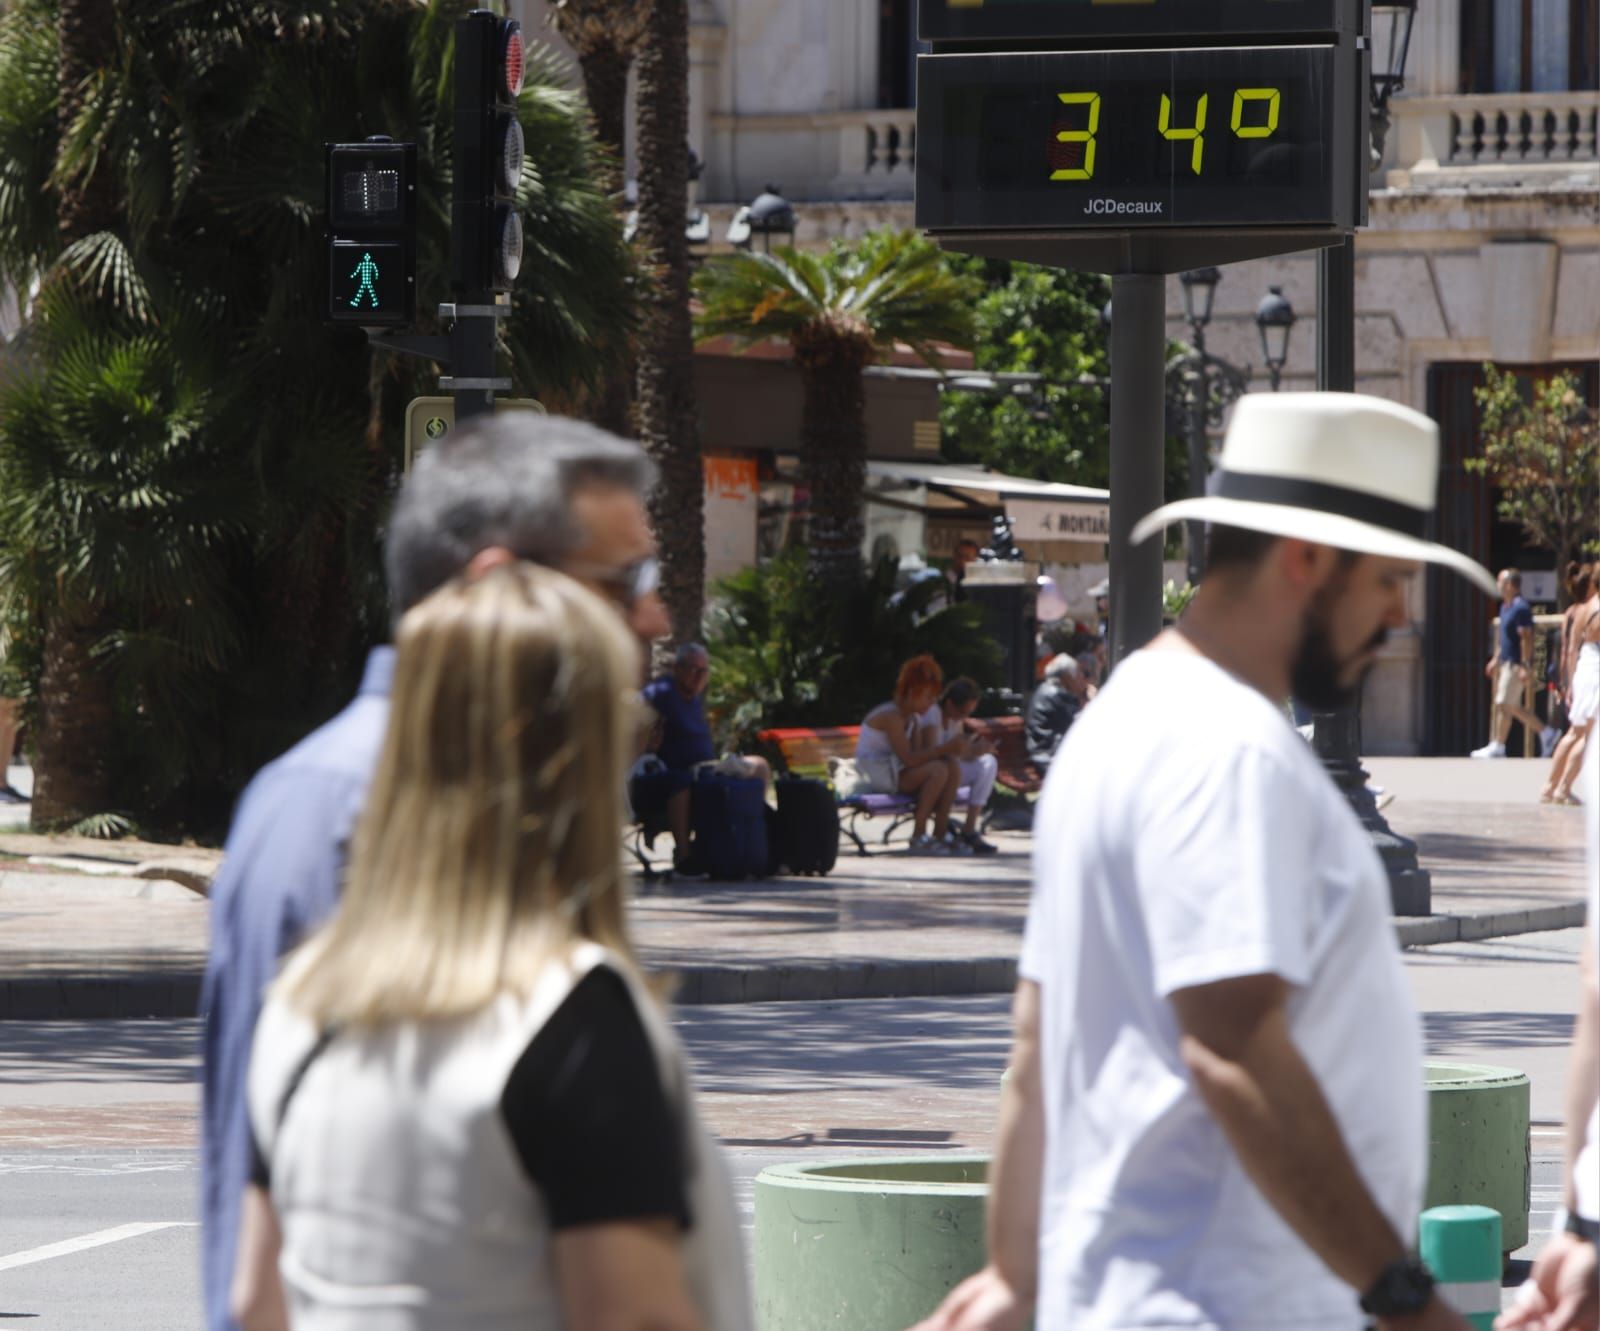 Valencia registra las temperaturas más altas de Europa